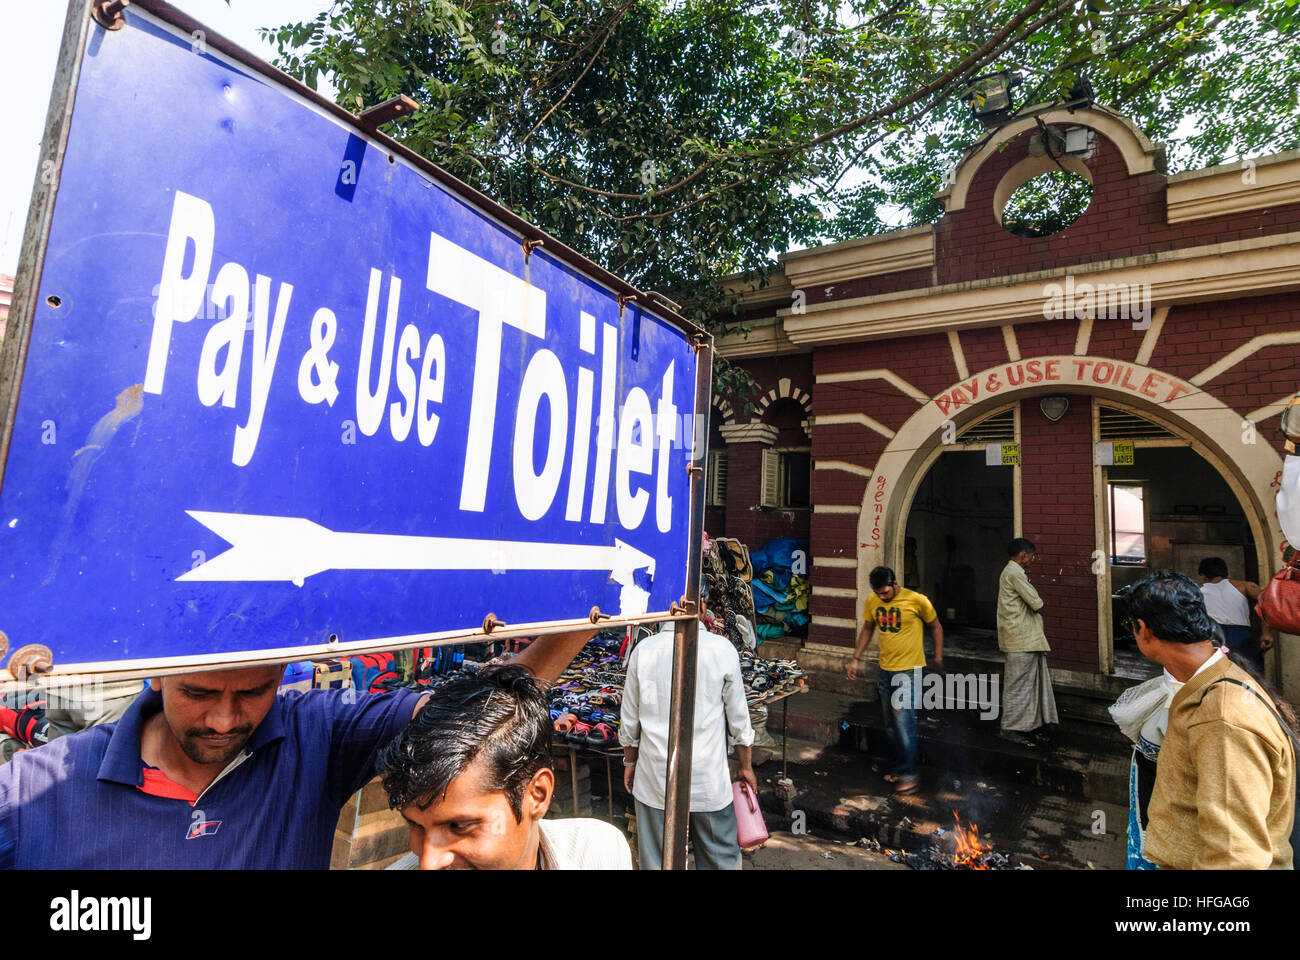 Kolkata (Calcutta, Kalkutta): Public toilet, West Bengal, Westbengalen, India Stock Photo